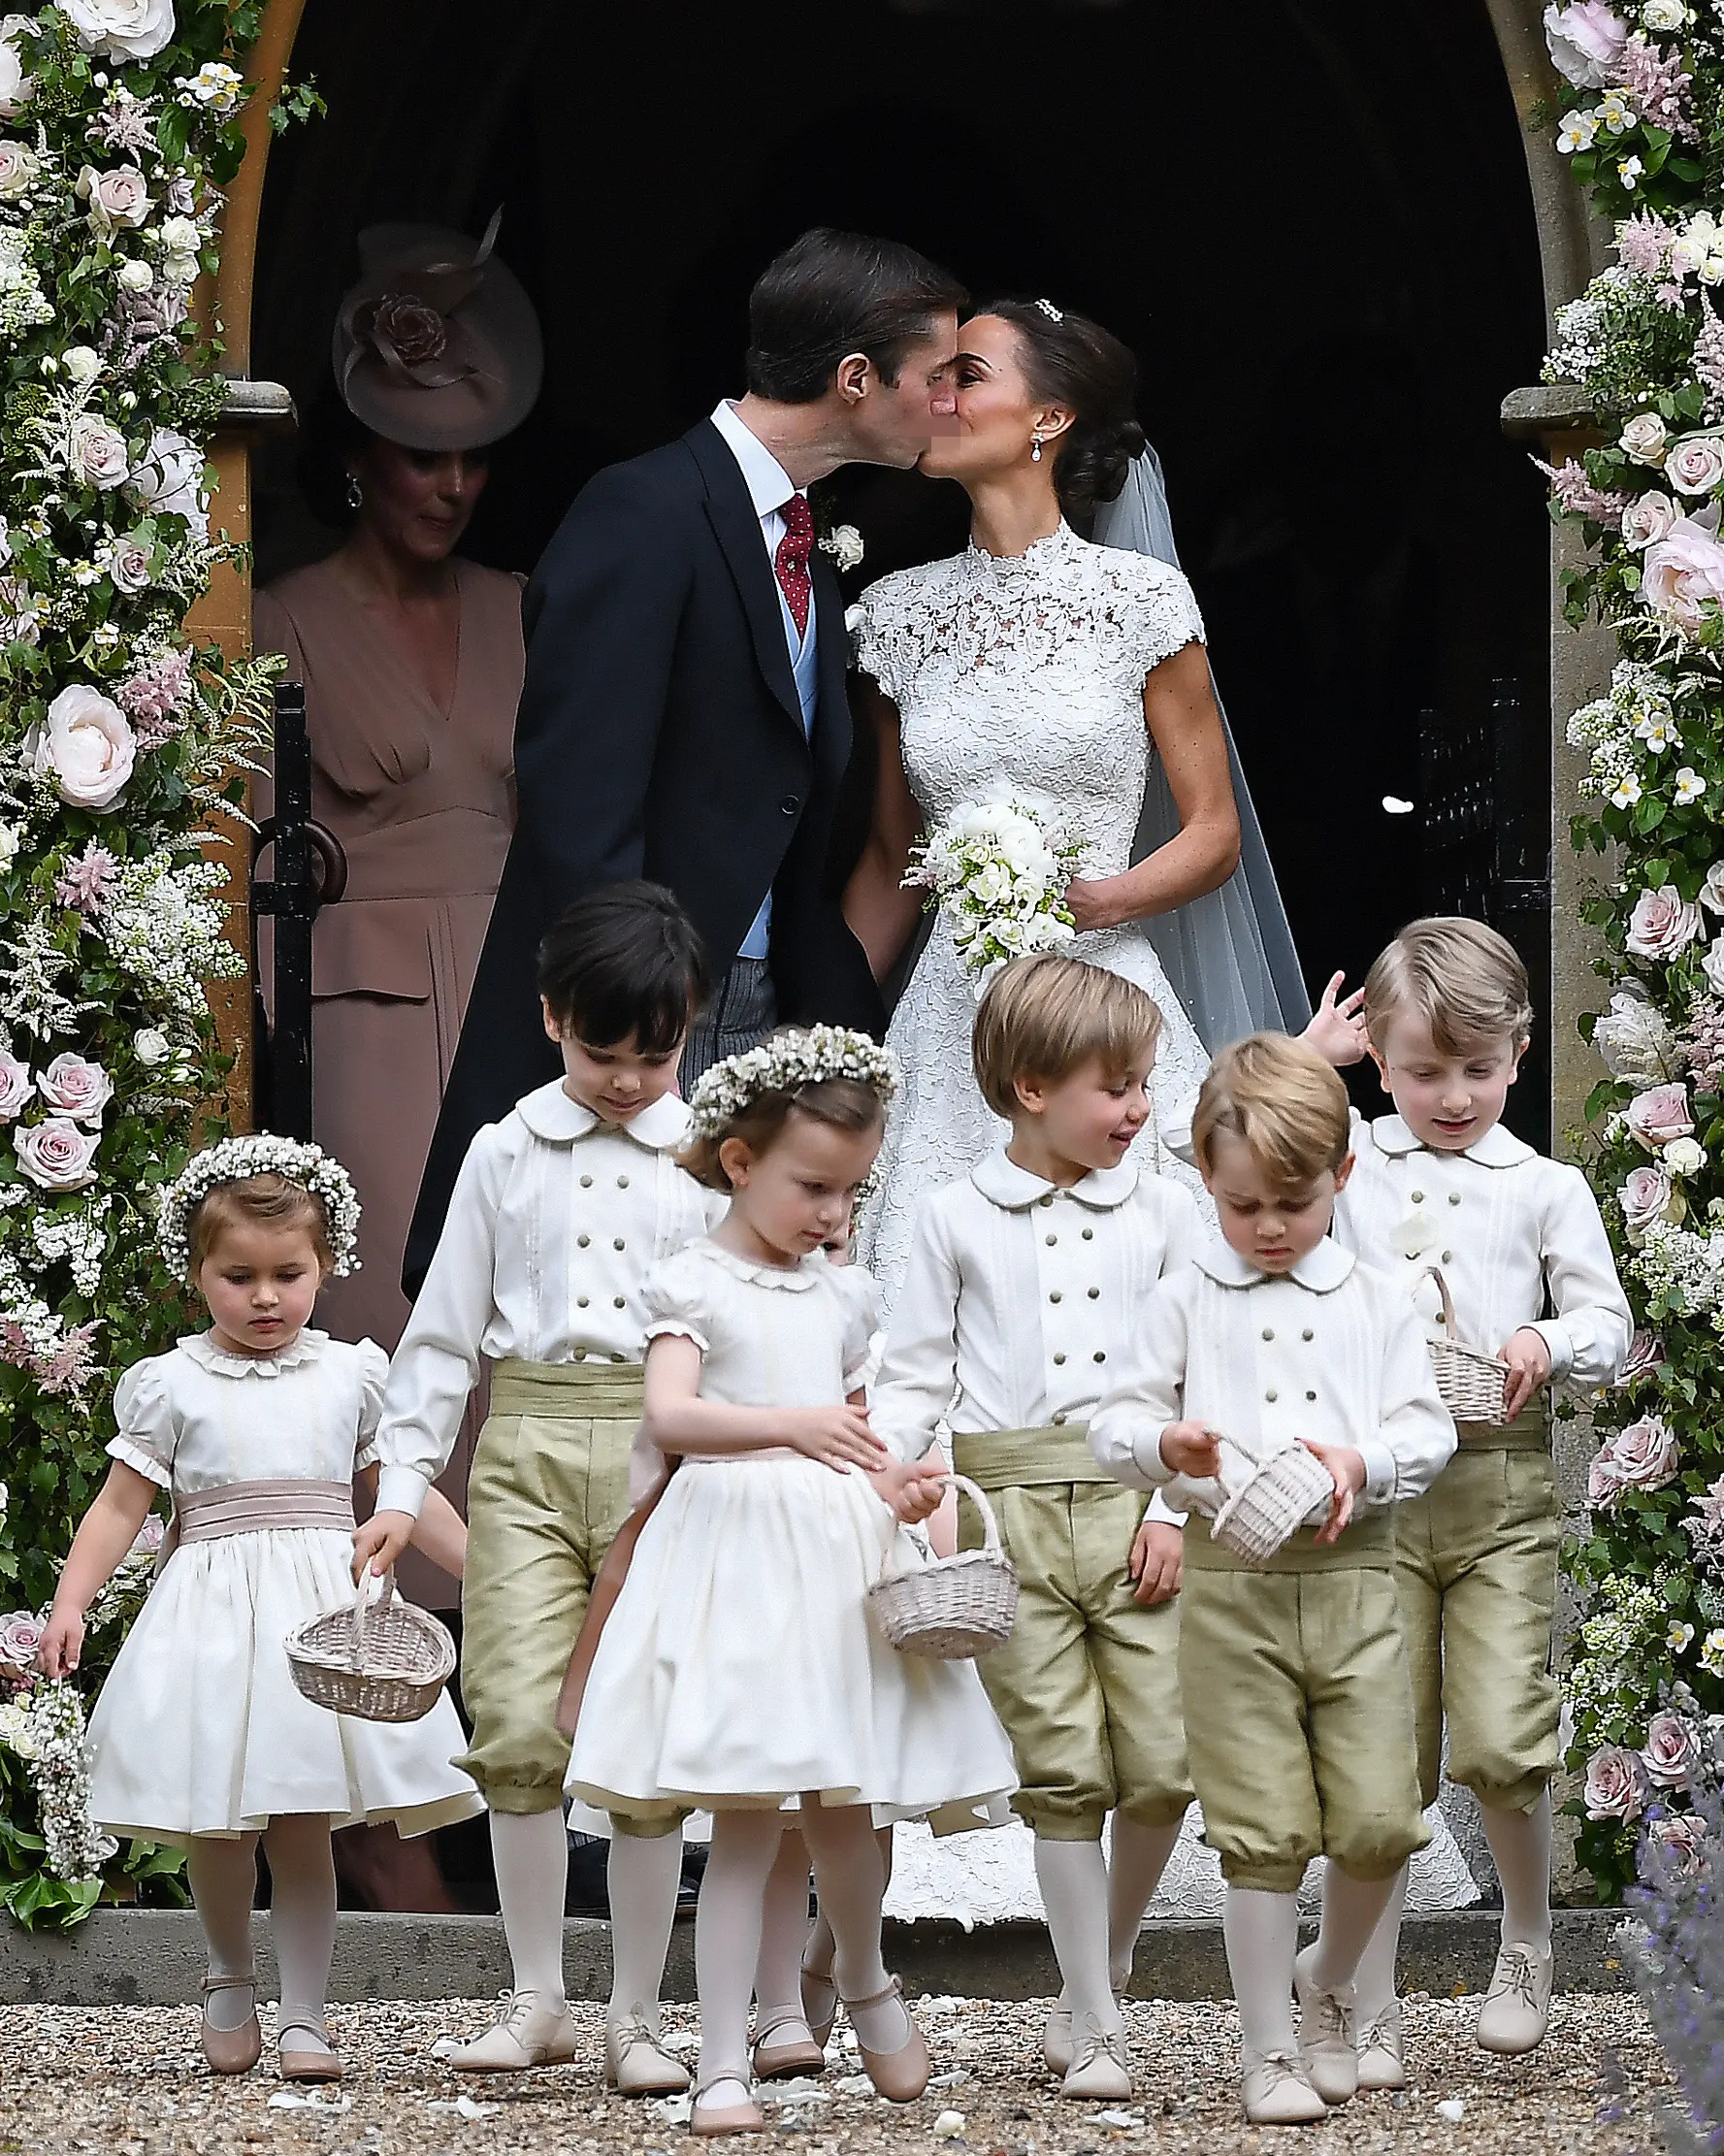 Pippa Middleton dan James Matthews berciuman setelah resmi menikah di sebuah gereja kecil di Inggris, Sabtu (20/5). Pernikahan itu dihadiri sejumlah nama besar seperti Pangeran Harry, Pangeran William dan petenis Roger Federer. (JUSTIN TALLIS/POOL/AFP)